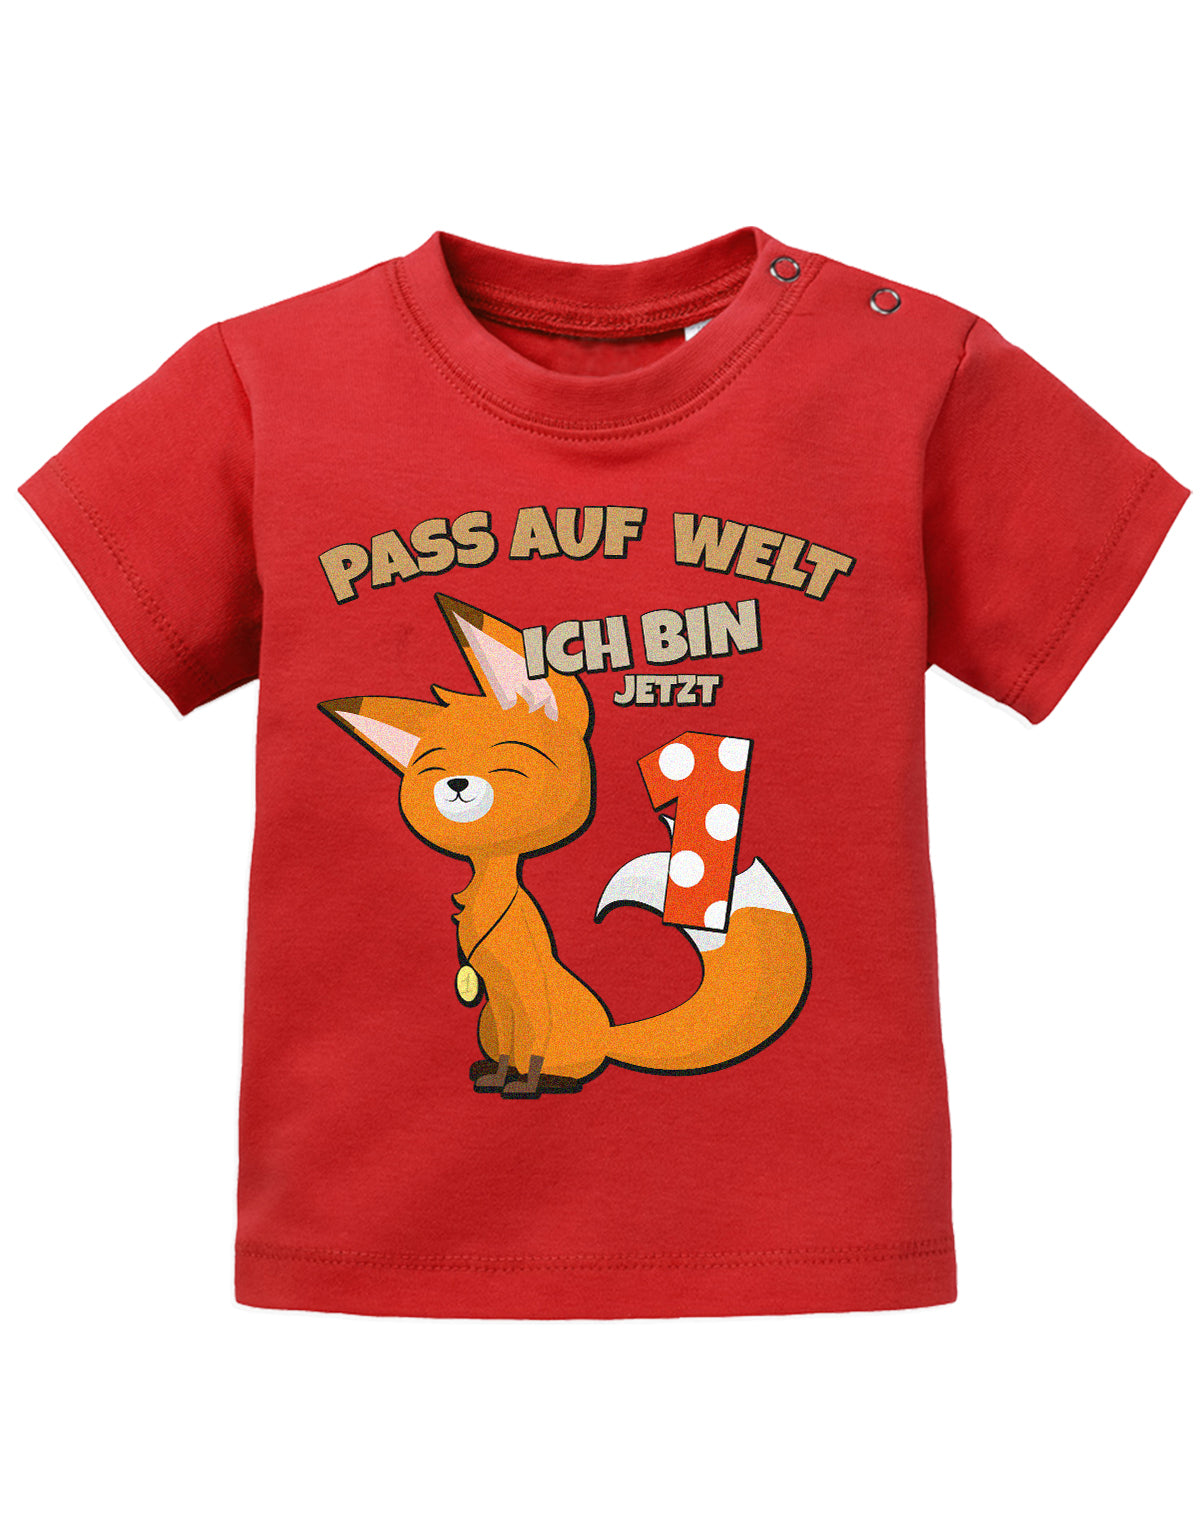 Pass auf welt ich bin jetzt 1 mit fuchs motiv-Geburtstag T-Shirt - 1 Jahr mit Fuchs rot